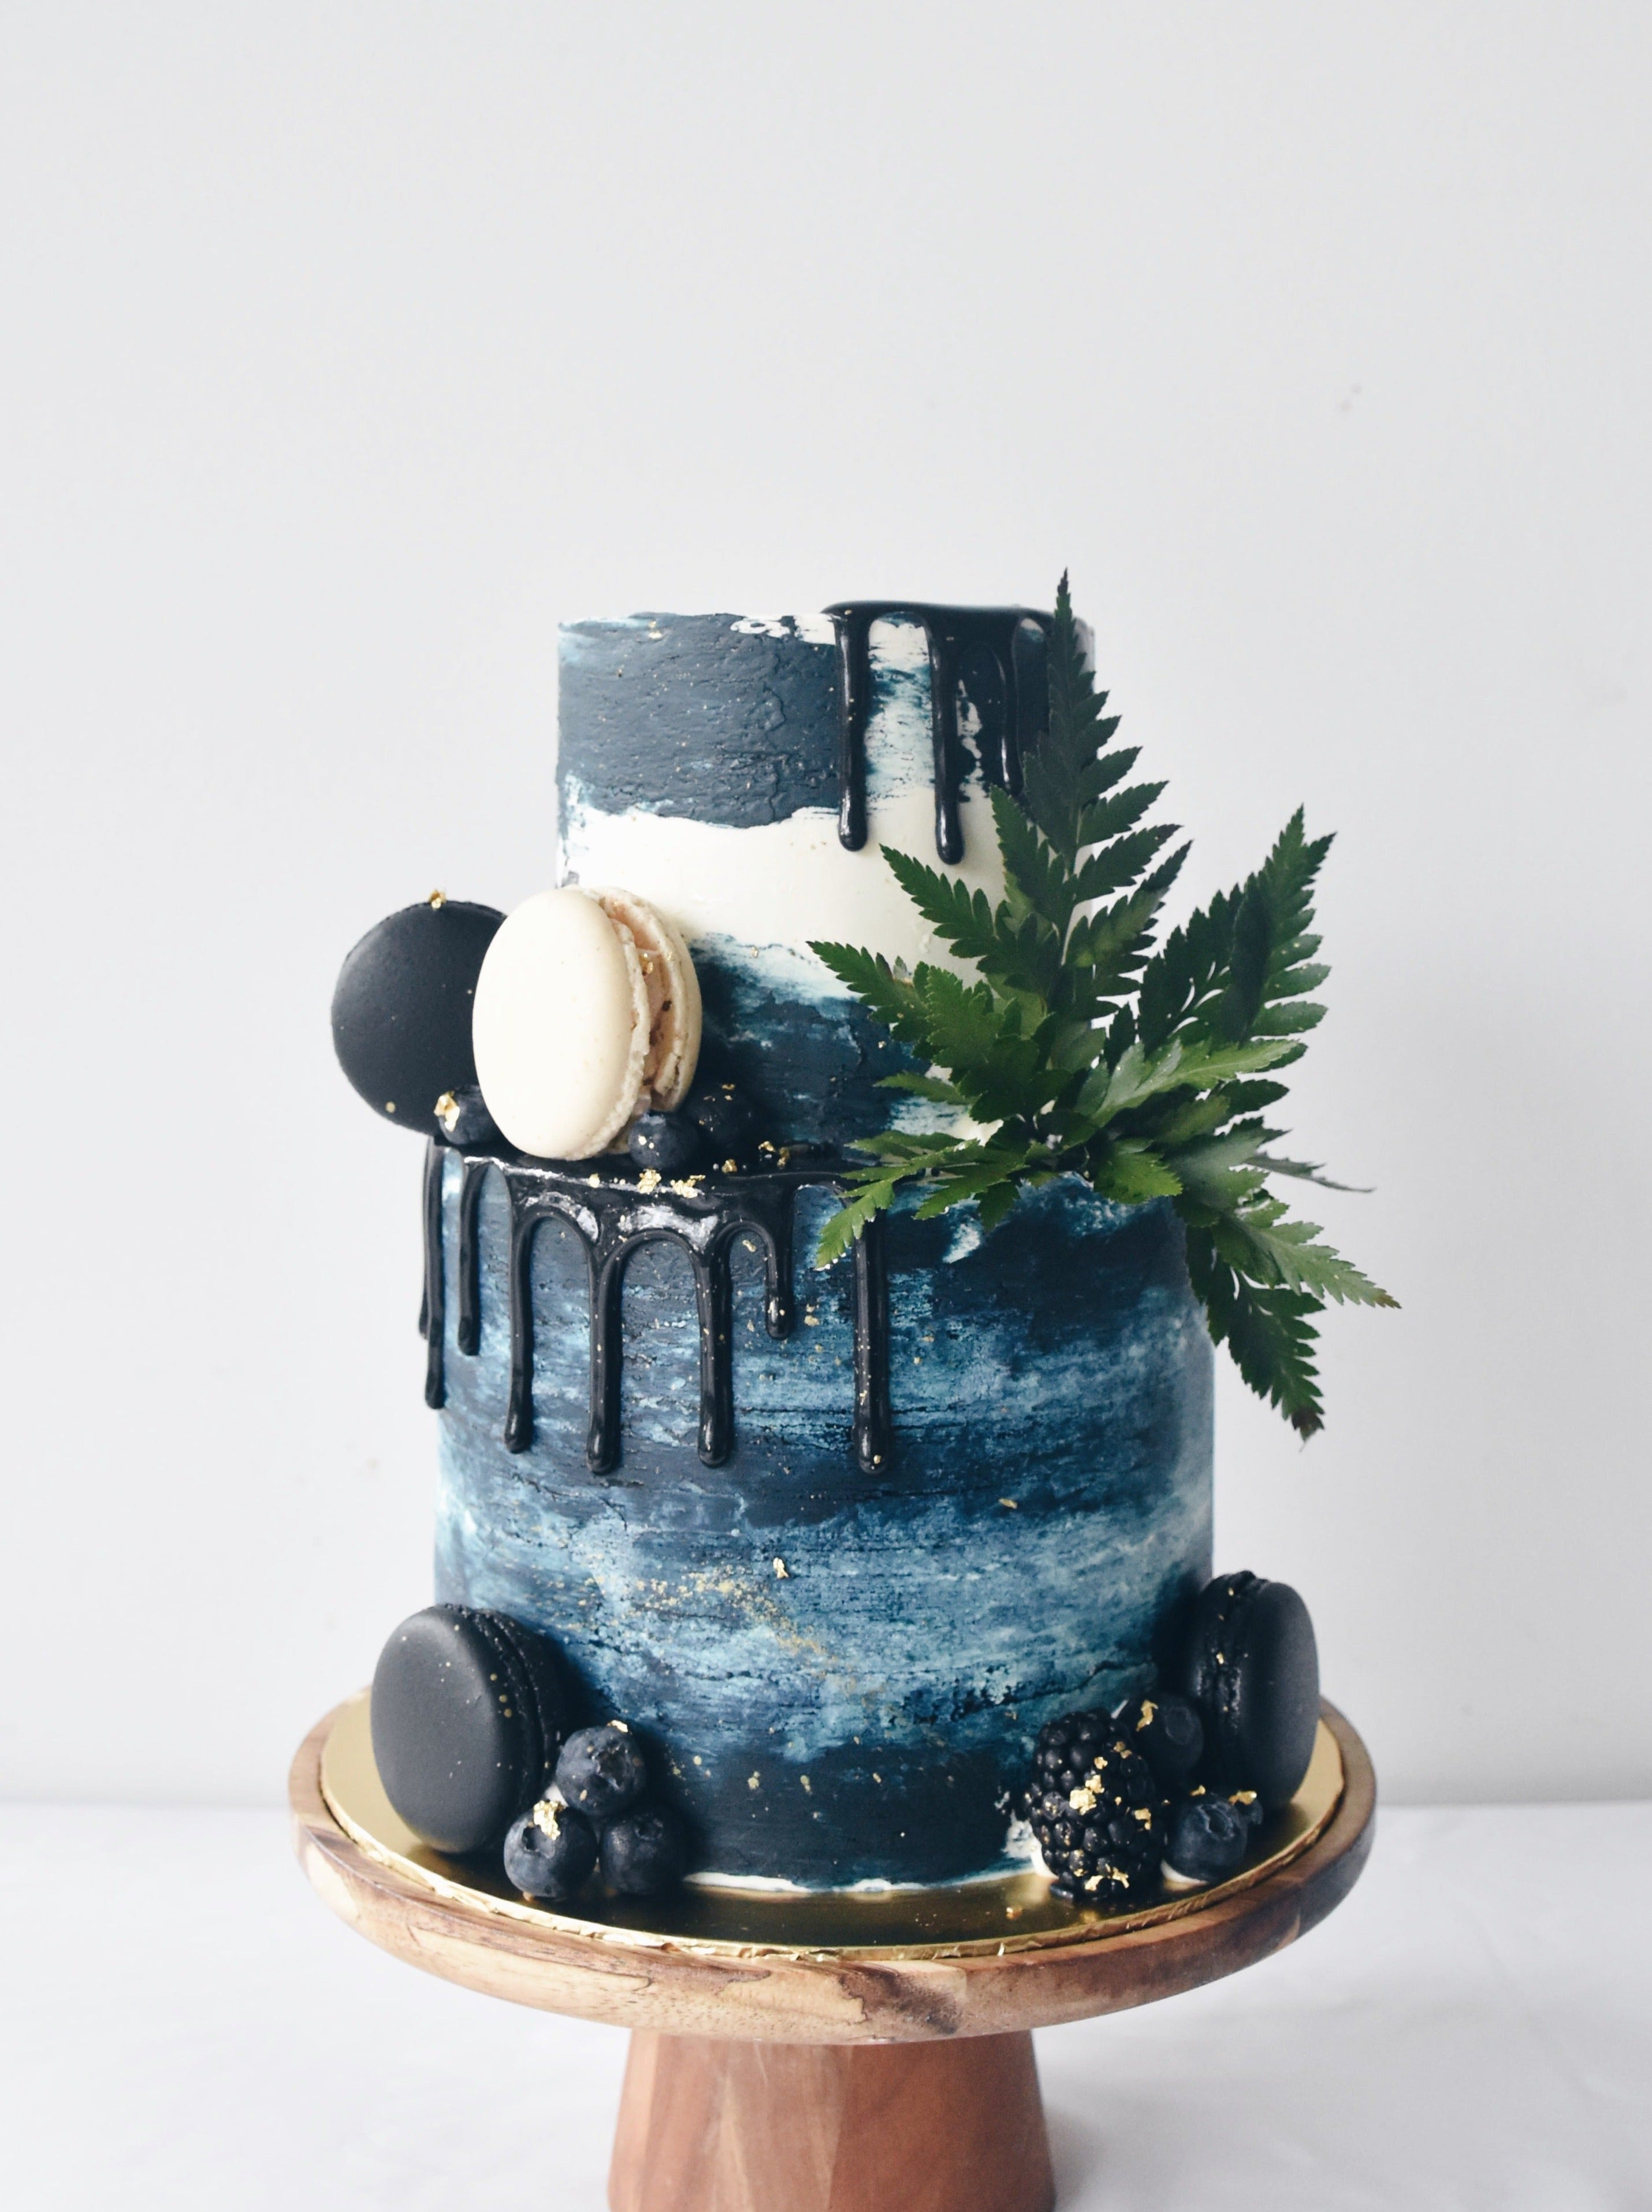 BLUEFOREST CAFE - Blue Forest Cake Shop | Facebook